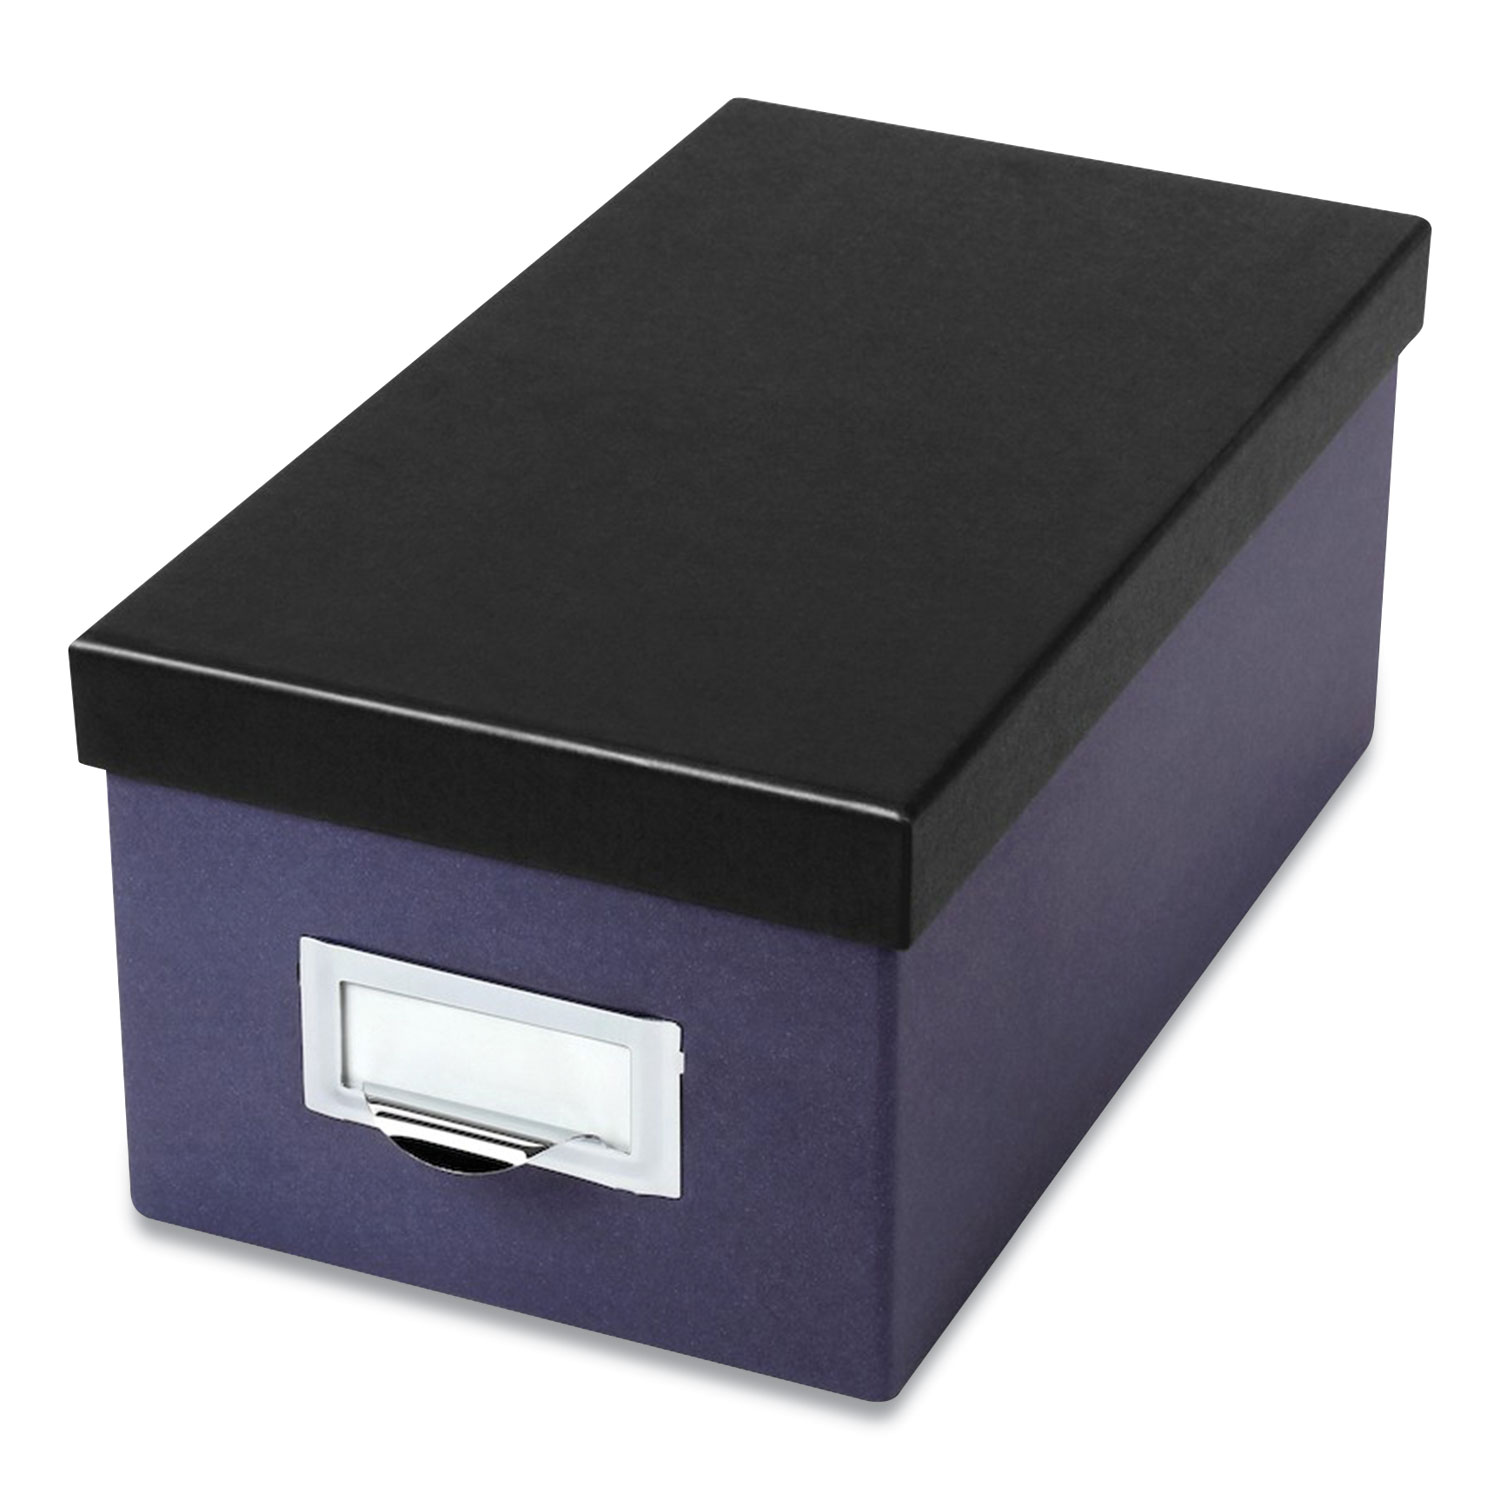  Oxford 406462 Index Card Storage Box, Holds 1,000 4 x 6 Cards, Pressboard, Indigo/Black, 6.5 x 11.5 x 5 (OXF24401225) 